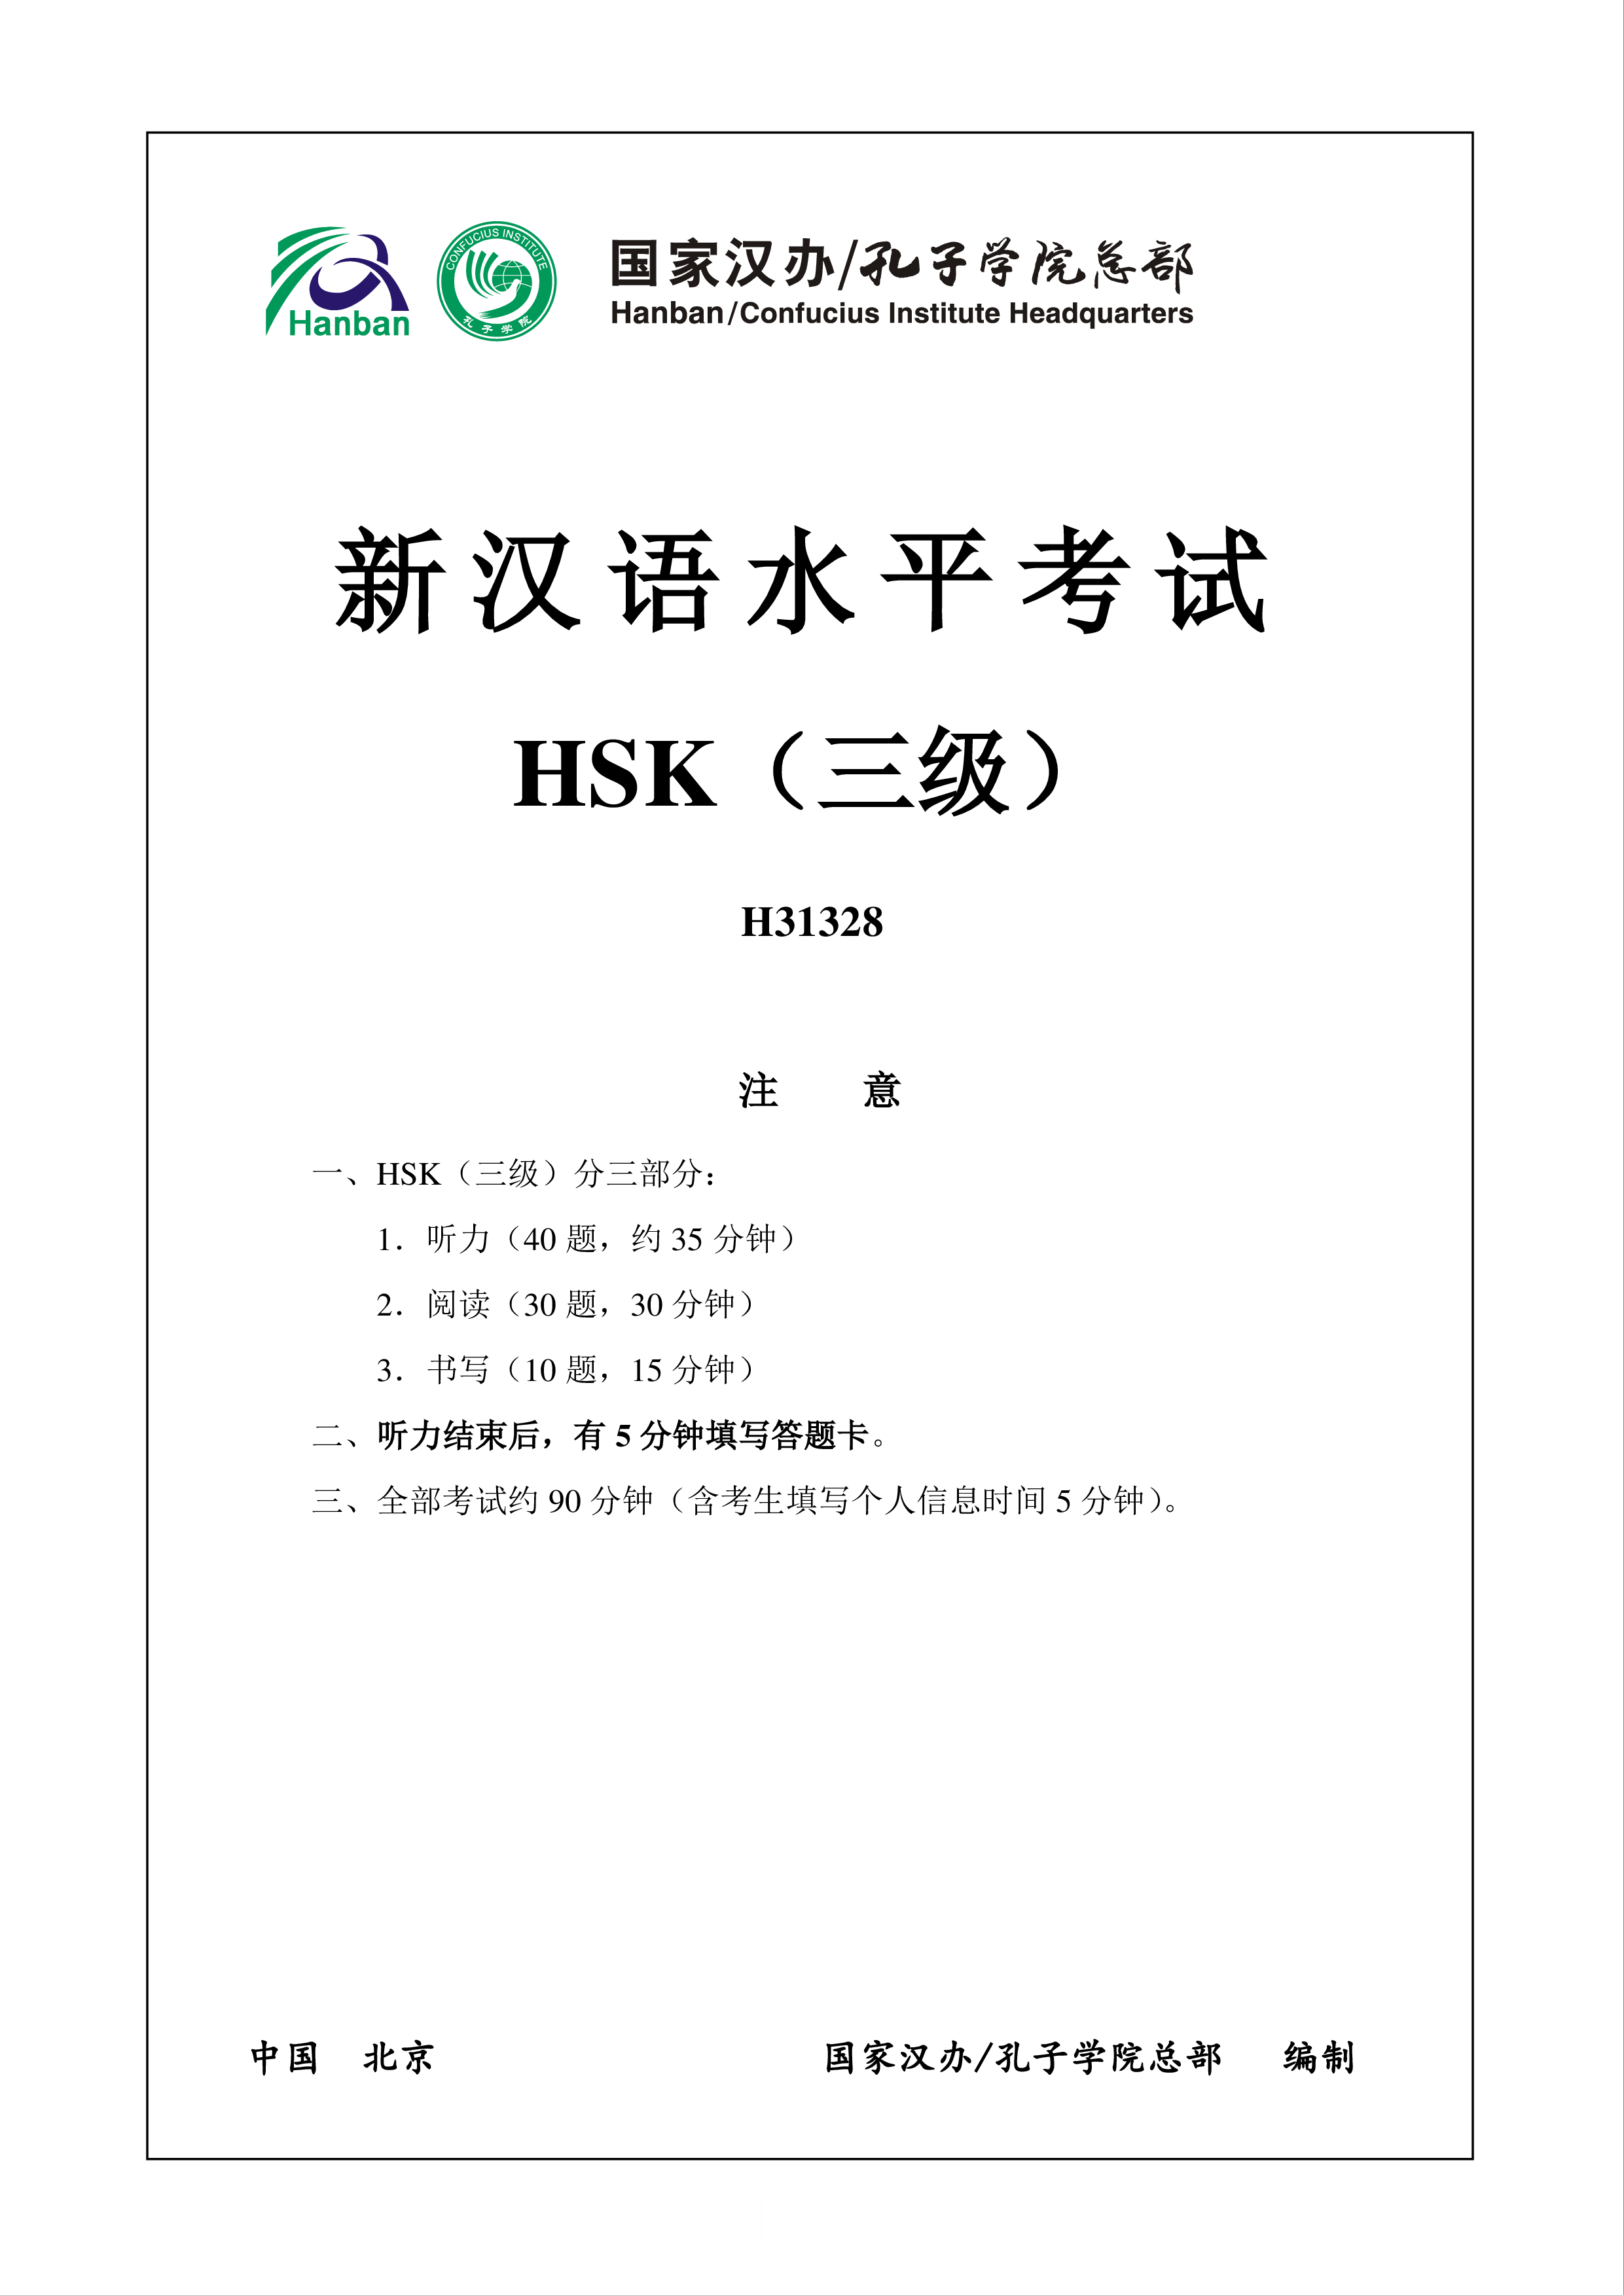 HSK3 H31328 Exam main image